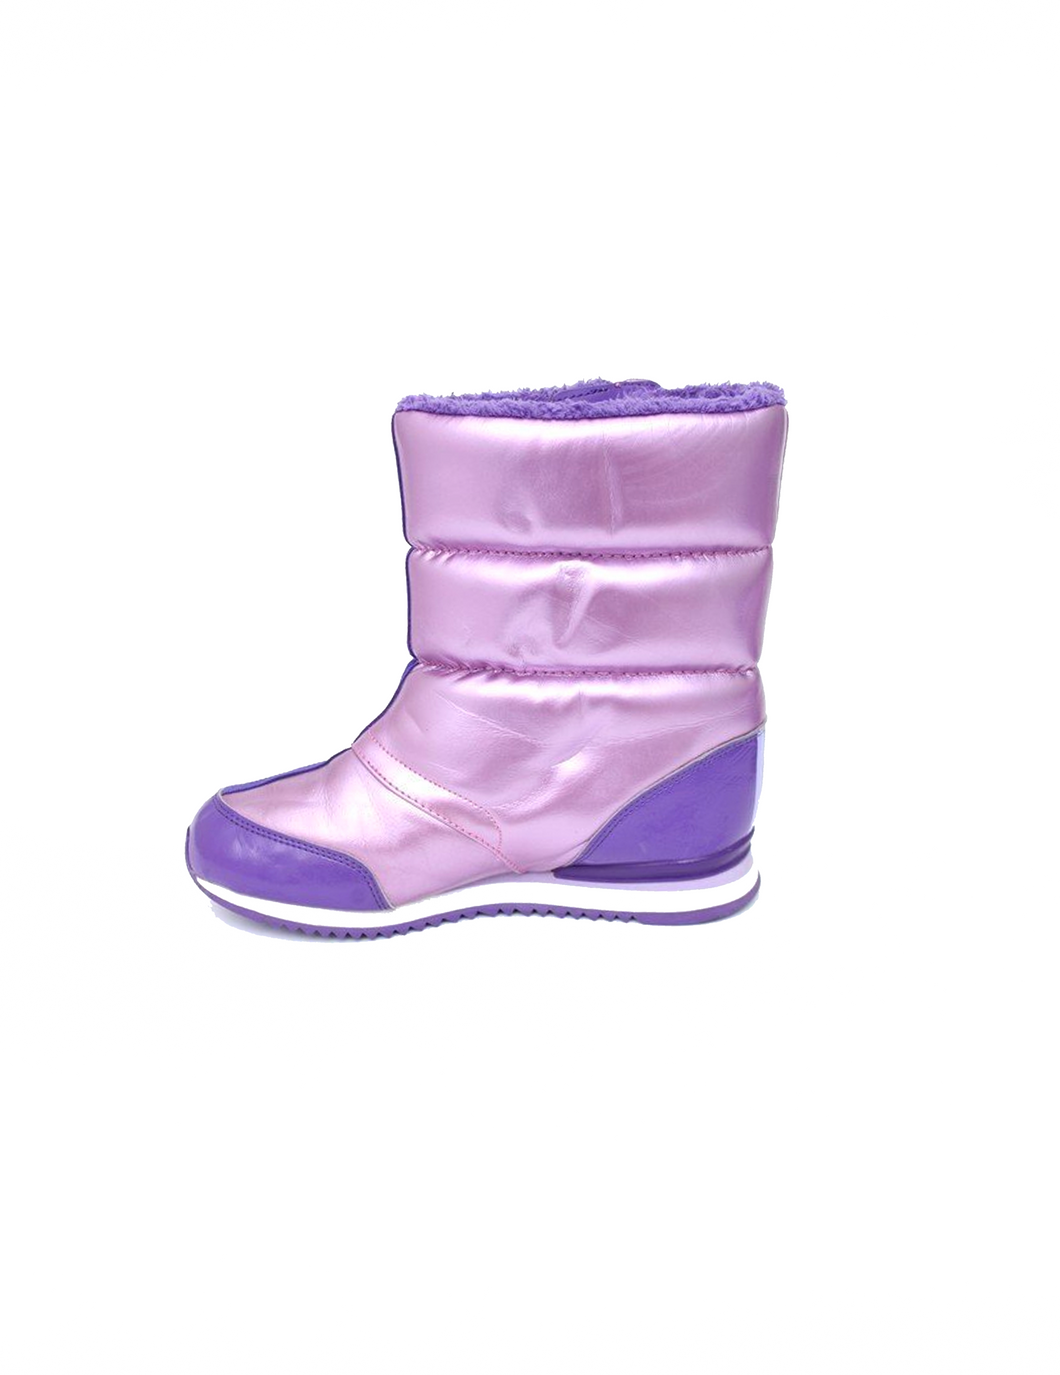 Adidas Purple Patent Puffy Boots